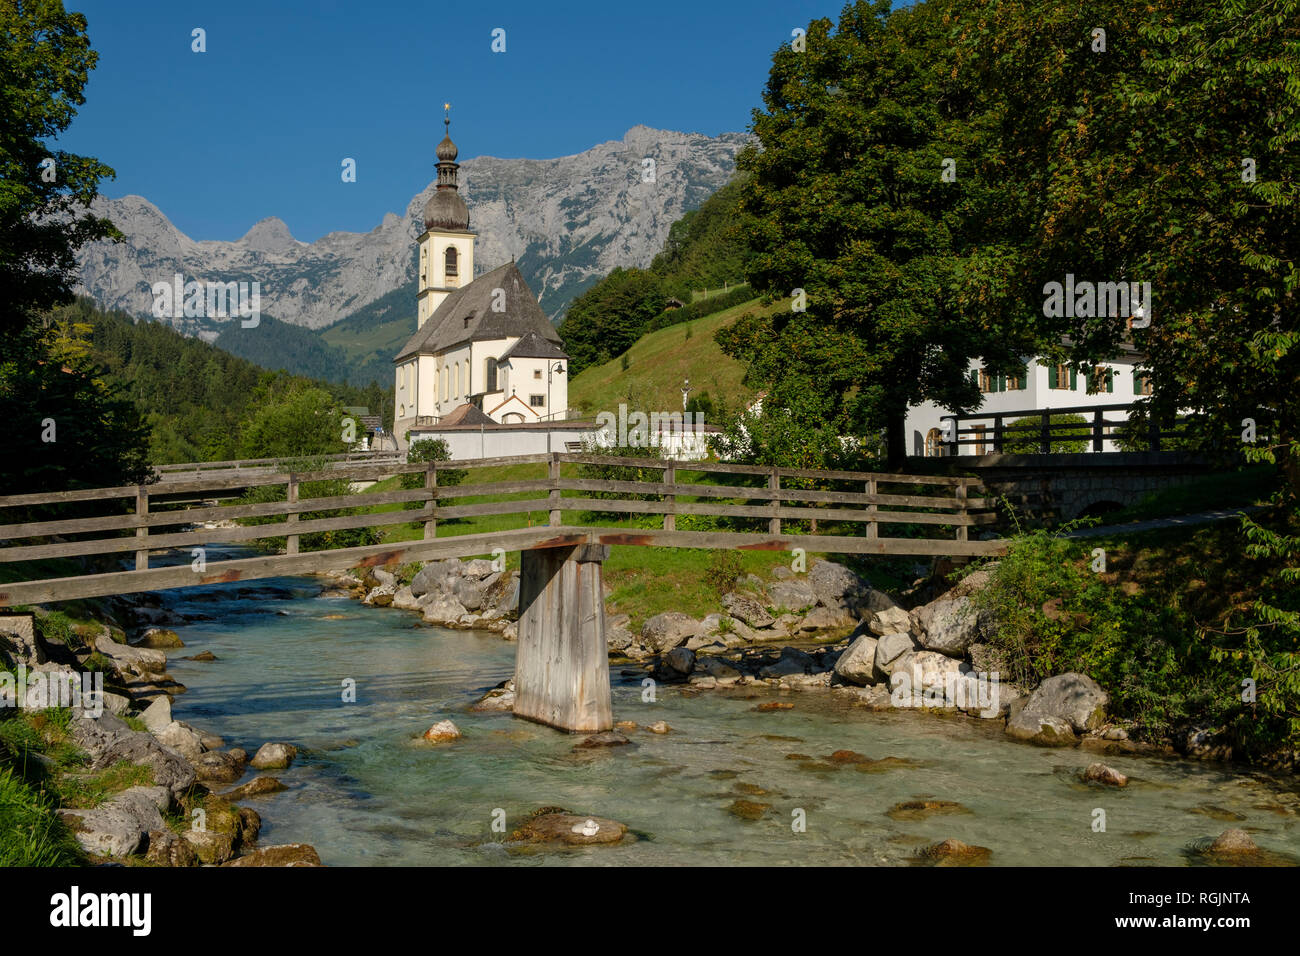 Allemagne, Bavière, Berchtesgadener Land, église paroissiale de St Sébastien en face de la montagne Reiteralpe Banque D'Images